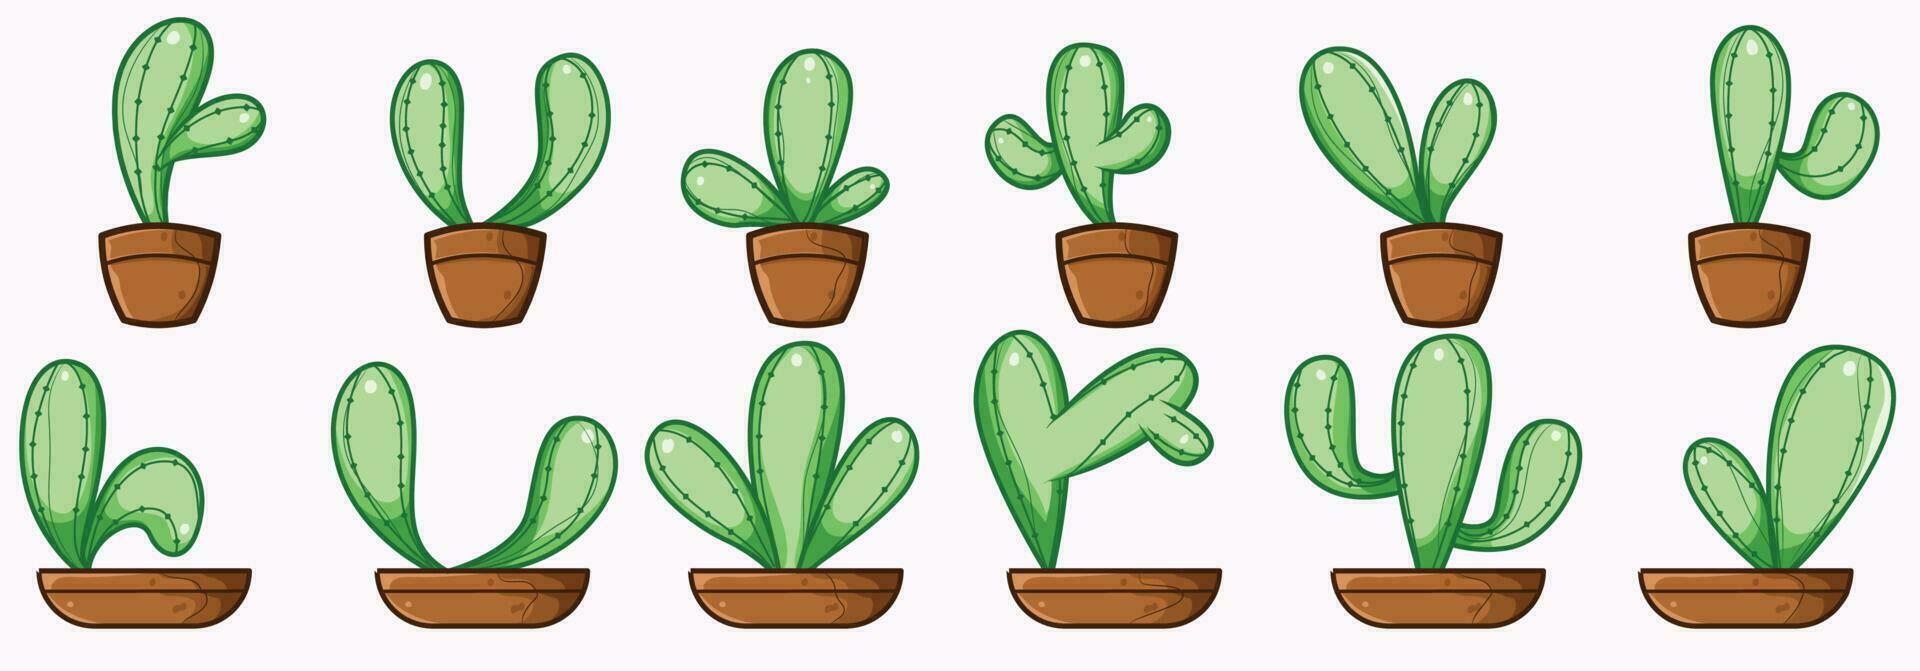 cactus art illustration dans dessin animé style vecteur